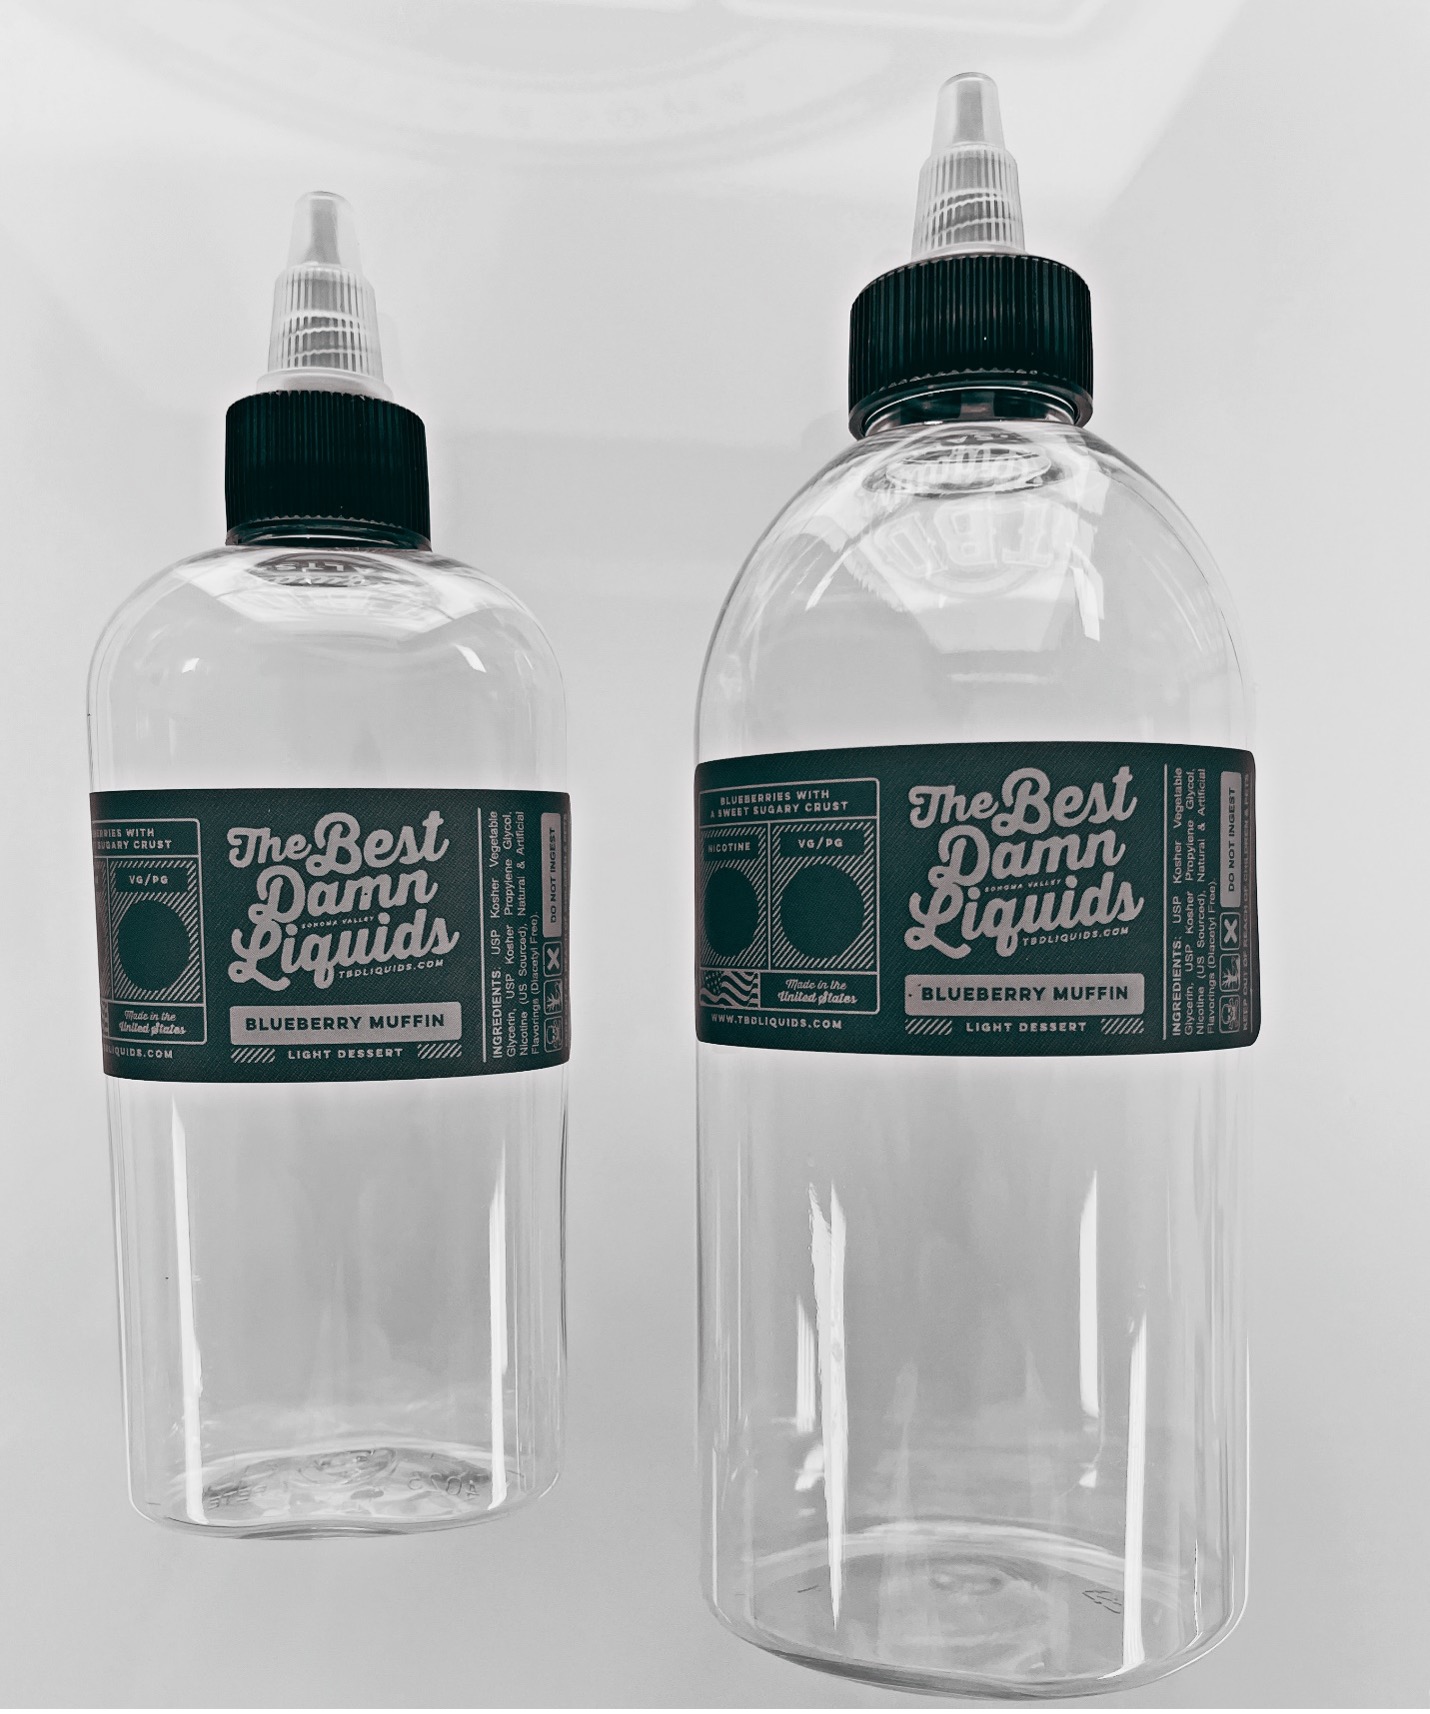 Zak stainless steel & leak proof water bottle - Bluey Official Website